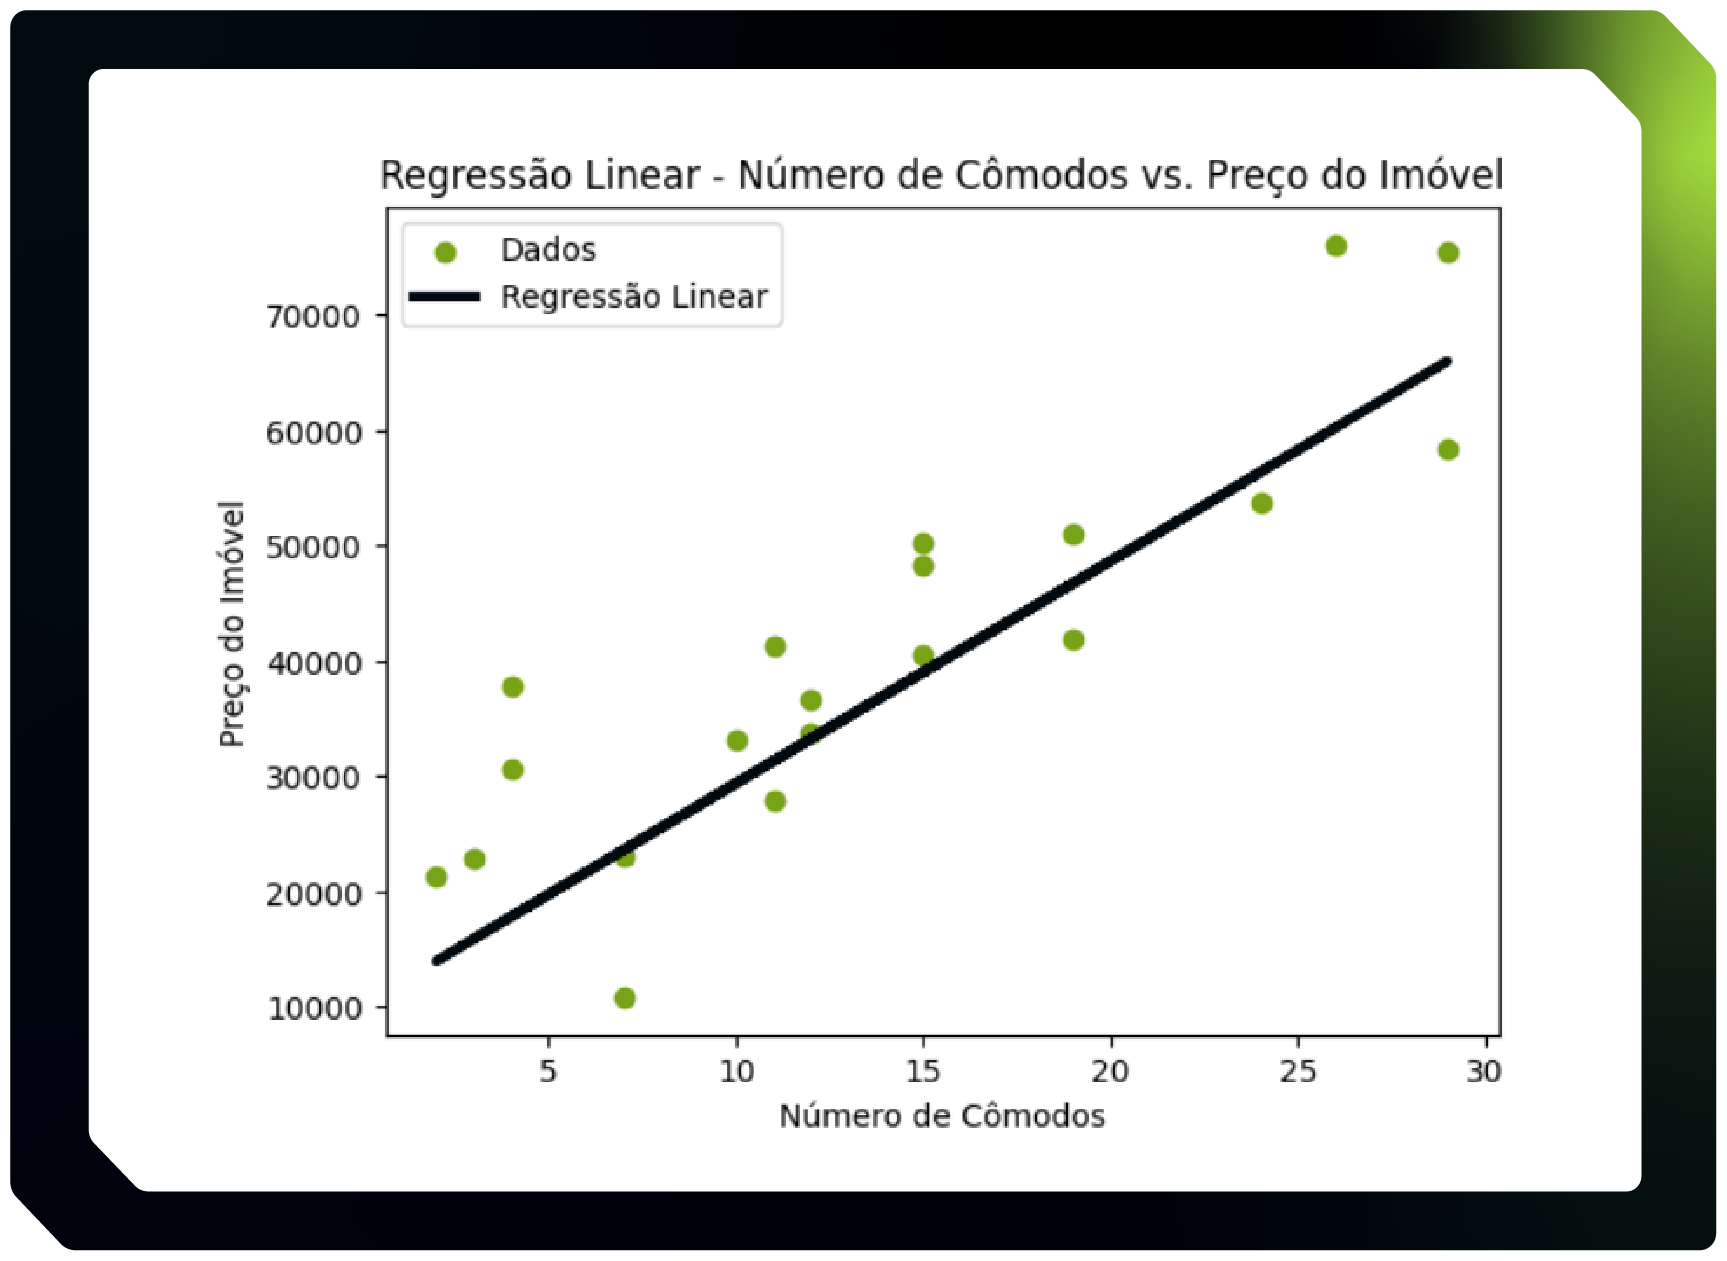 Alt text: Imagem que representa um Gráfico titulado “Regressão Linear - Número de Cômodos vs. Preço do Imóvel”. No eixo X existem valores de 0 a 30 espaçados de 5 em 5, intitulado  “Número de Cômodos”. No eixo Y existem valores de 0 até 8000 espaçados de 10000 em 10000, e é intitulado “Preço do Imóvel”. No gráfico existe uma reta na cor preta, chamada “Regressão Linear”, que está próxima de diversos pontos verdes, chamado “Dados”, a reta e os pontos adotam um crescimento linear positivo. A reta inicia próxima a origem do gráfico e termina próxima ao canto superior esquerdo.